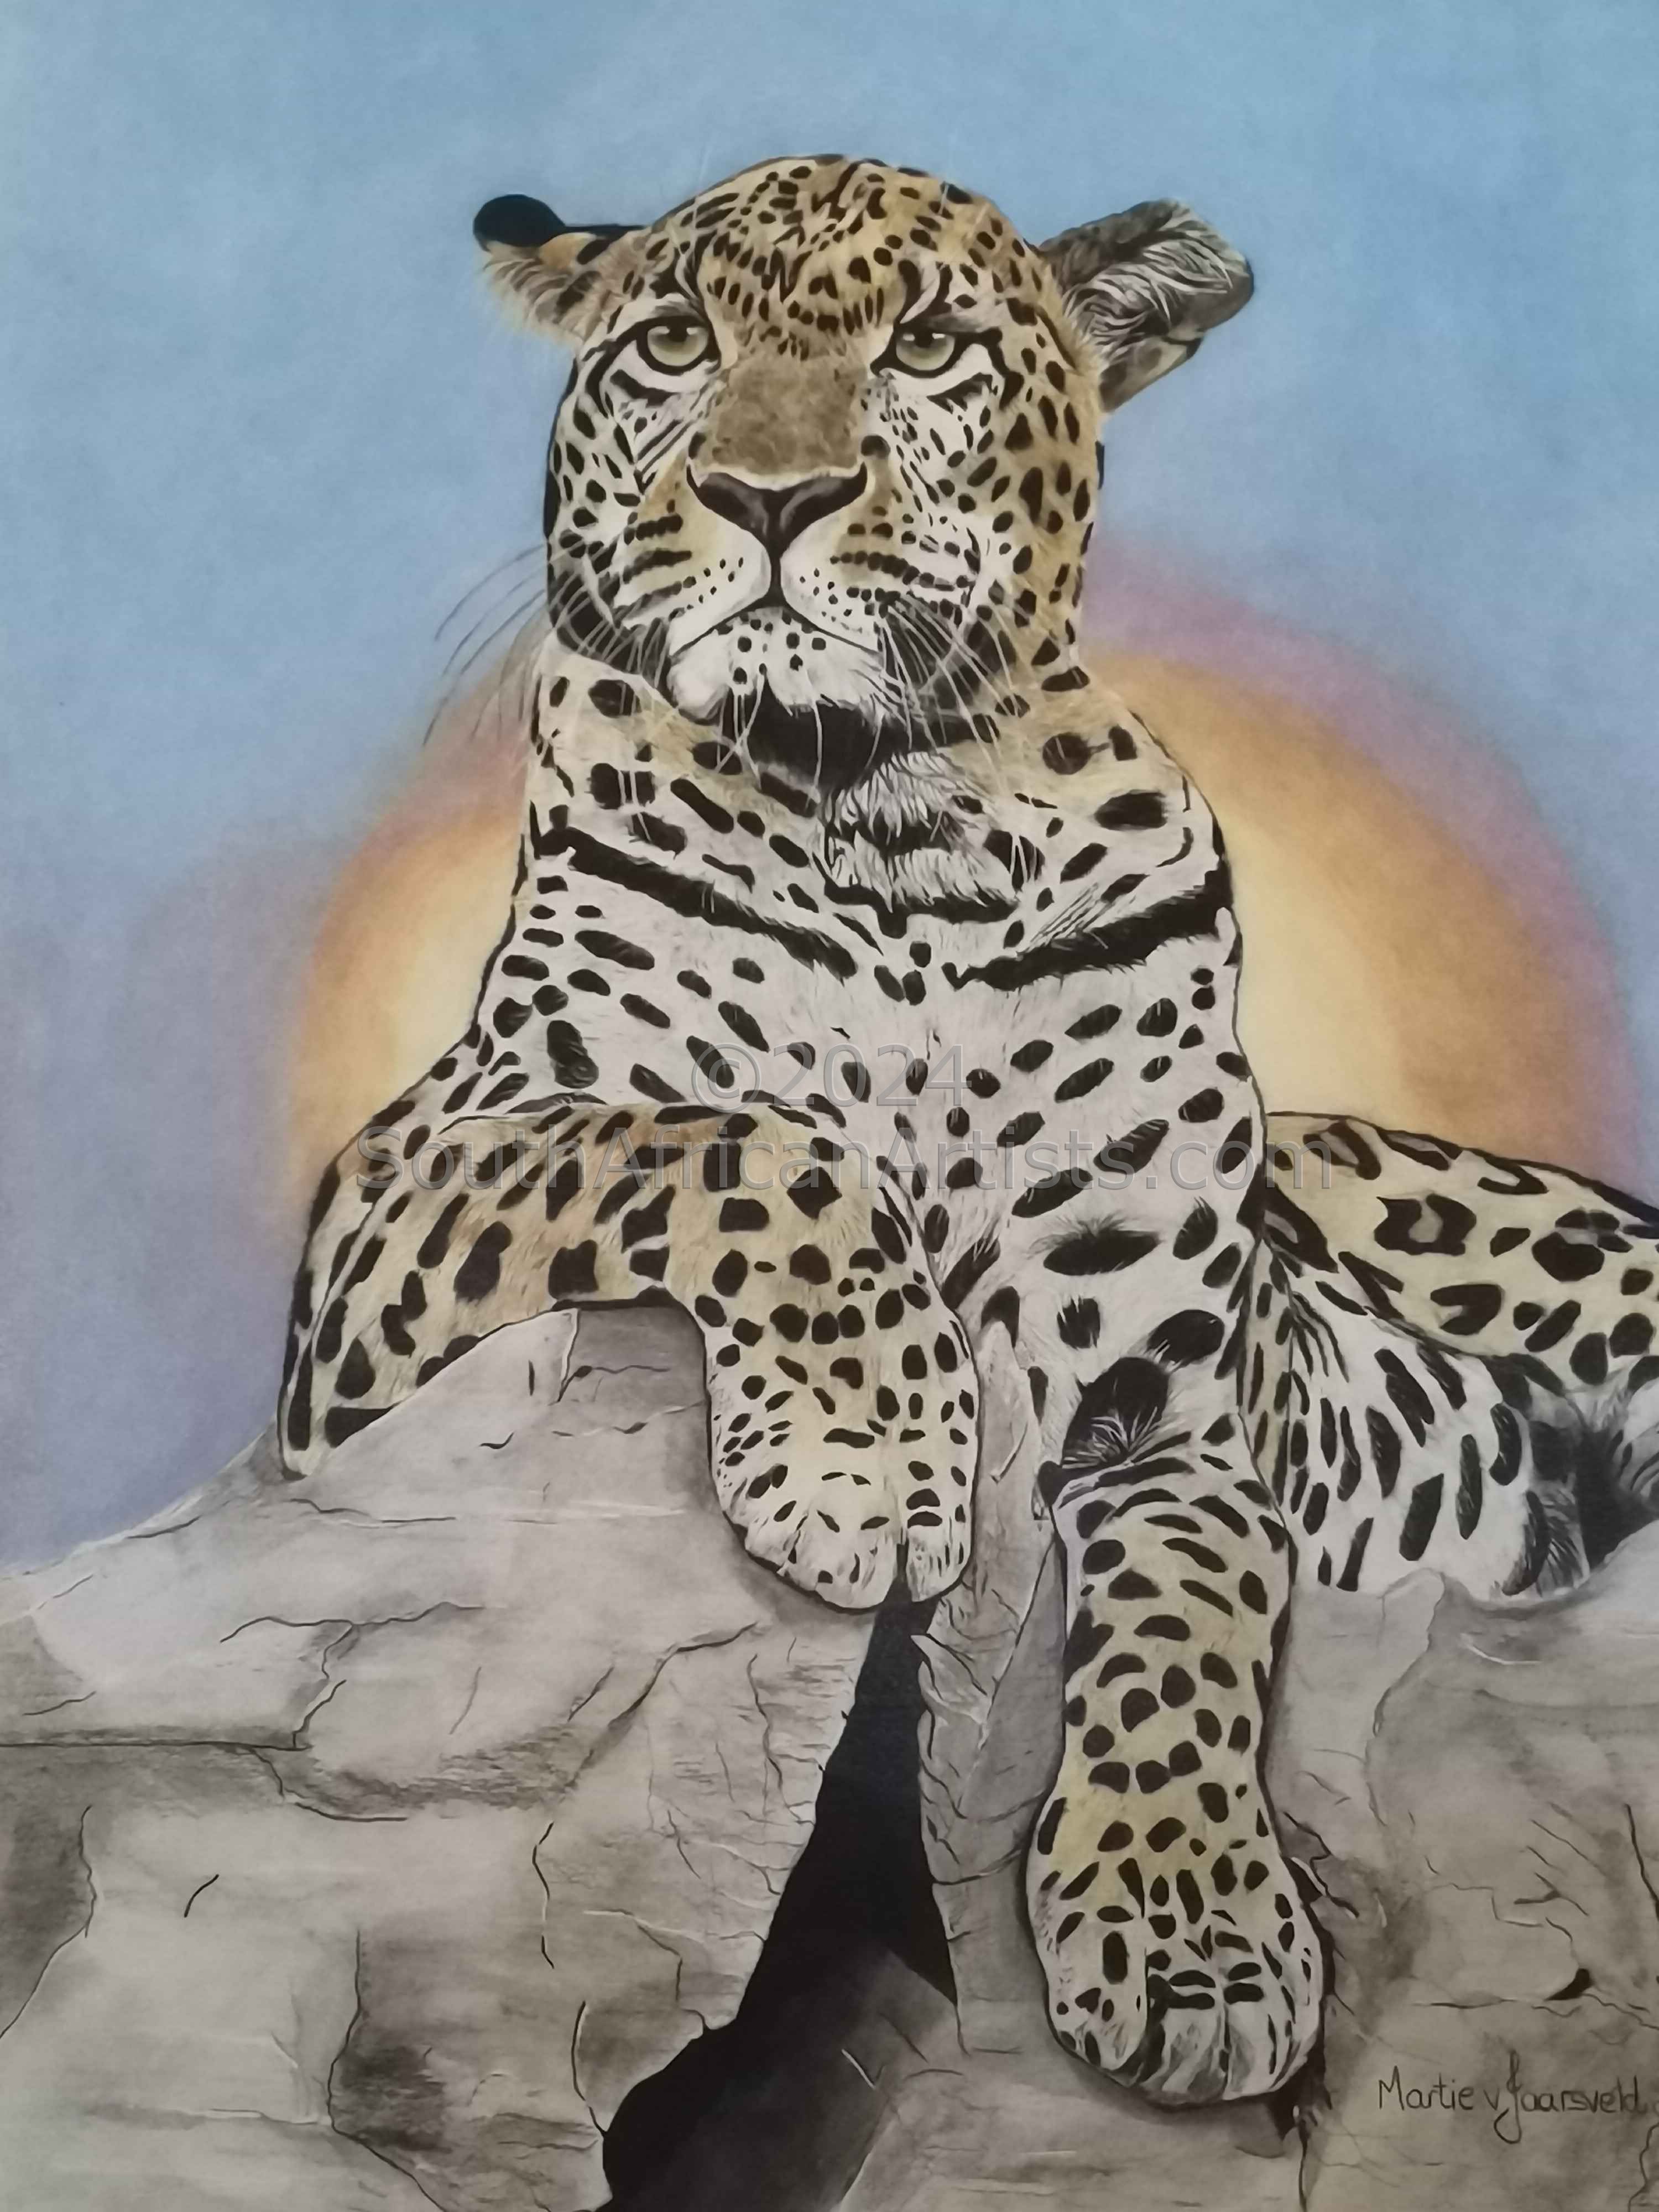 Leopard on Rock